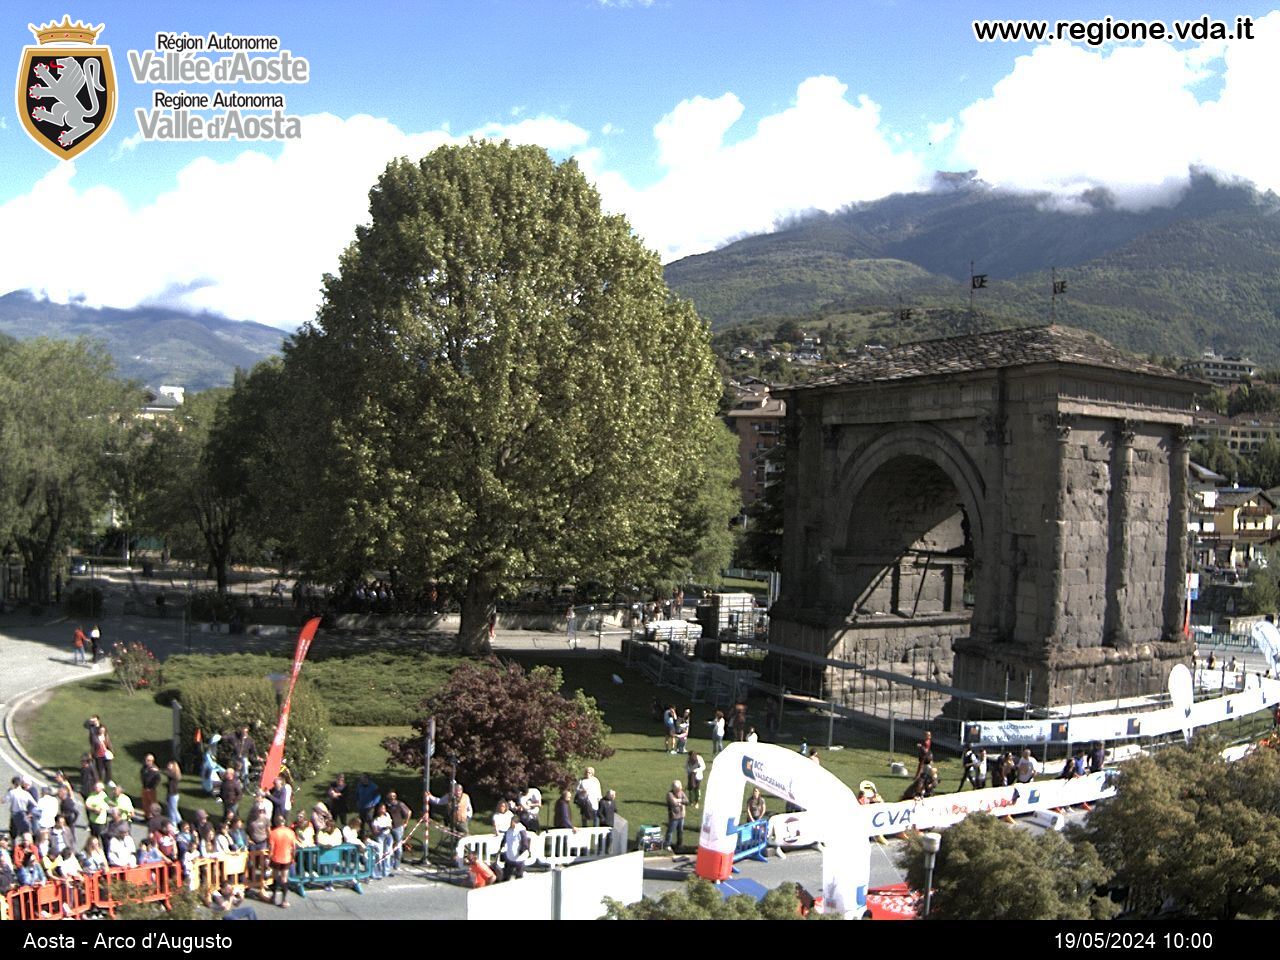 Aosta - Arco d'Augusto